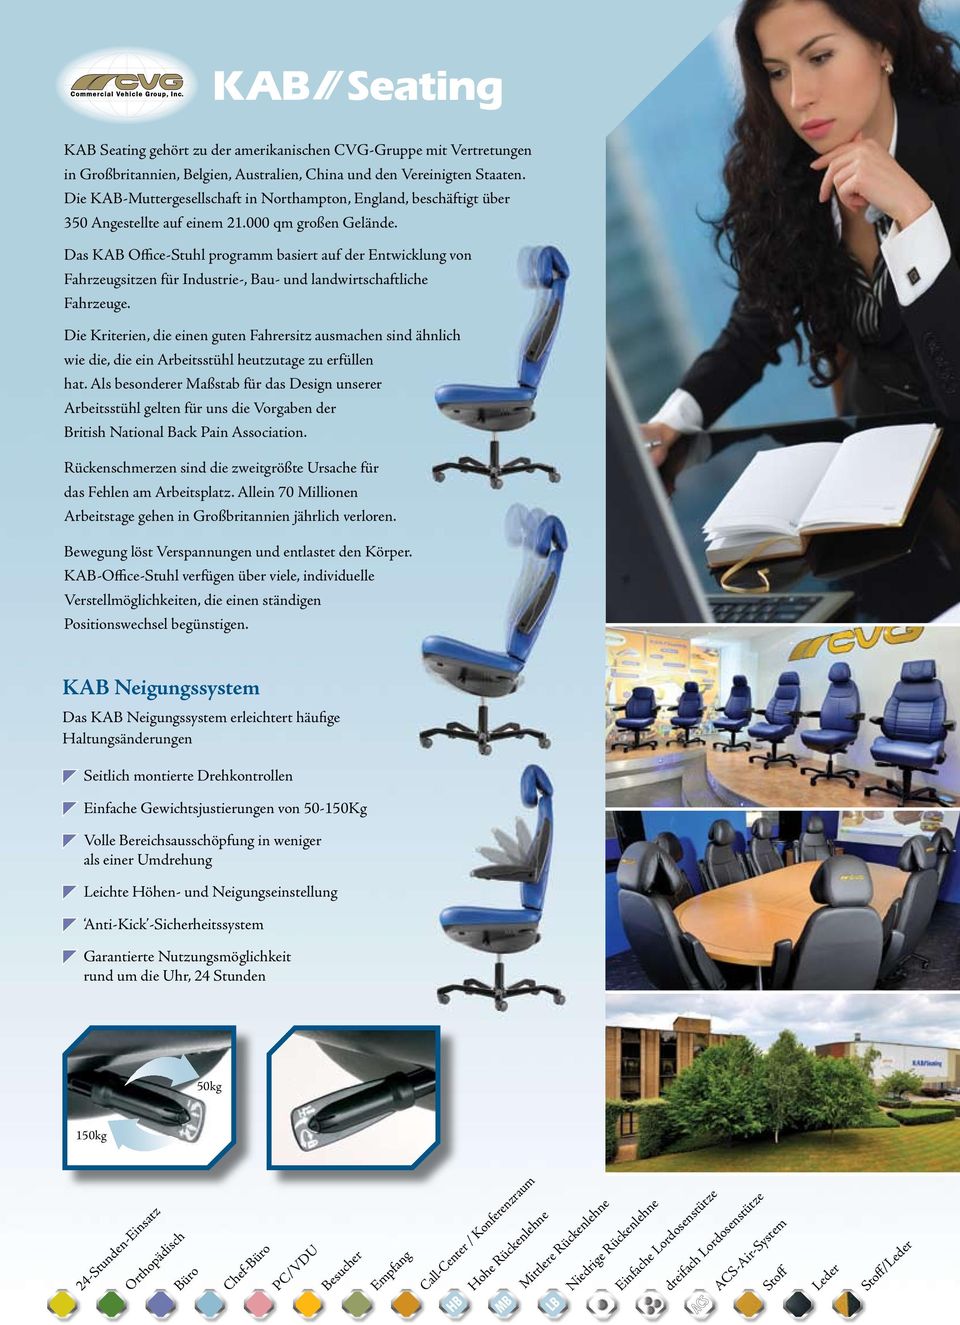 Das KAB Office-Stuhl programm basiert auf der Entwicklung von Fahrzeugsitzen für Industrie-, Bau- und landwirtschaftliche Fahrzeuge.